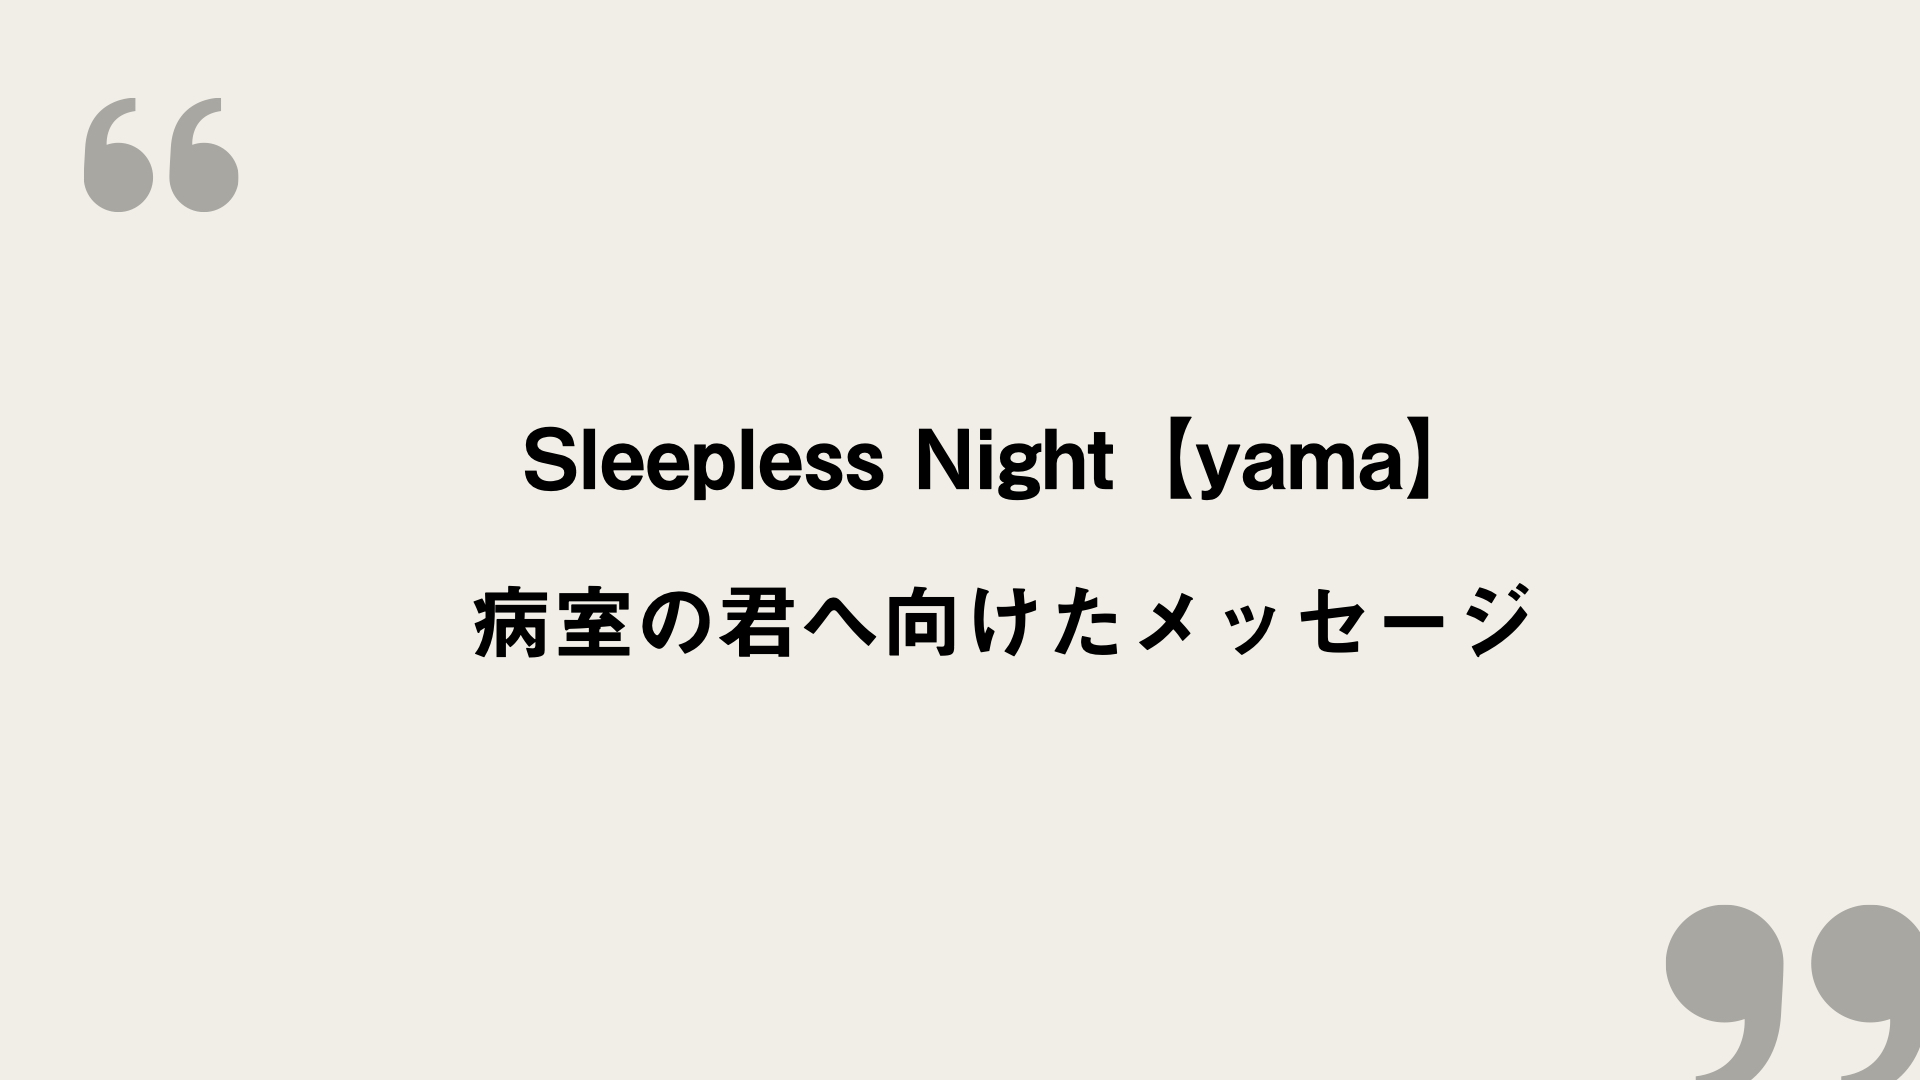 Sleepless Night Yama 歌詞の意味を考察 病室の君へ向けたメッセージ Framu Media